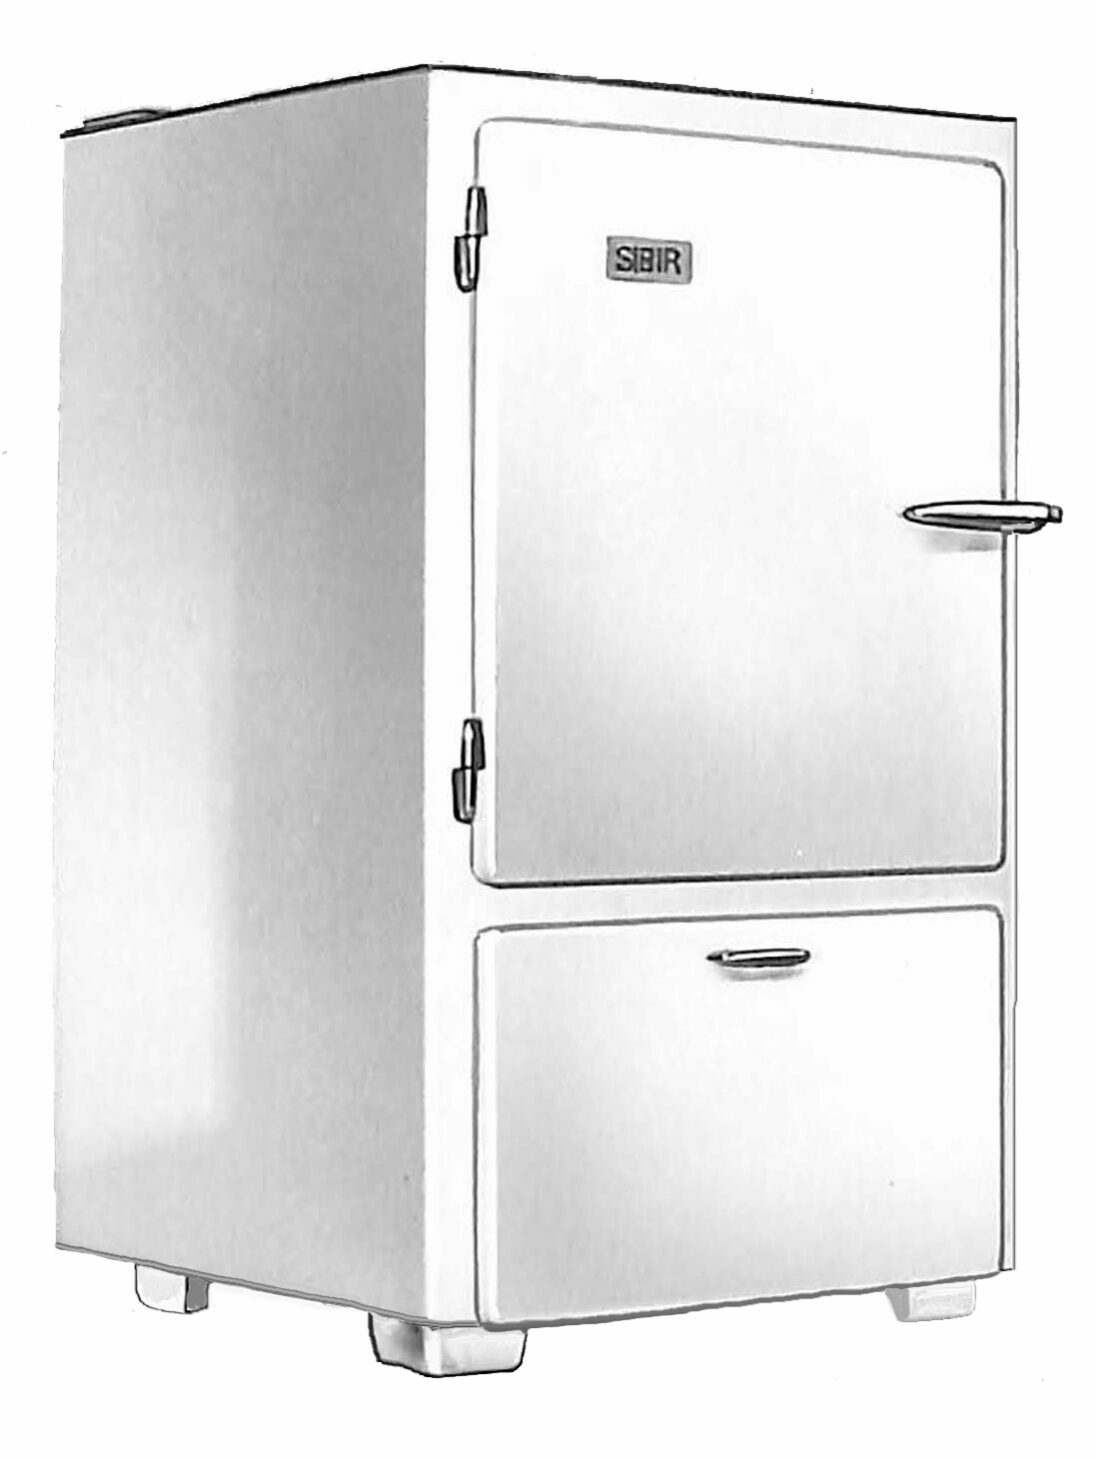 SIBIR réfrigérateur rétro production propre